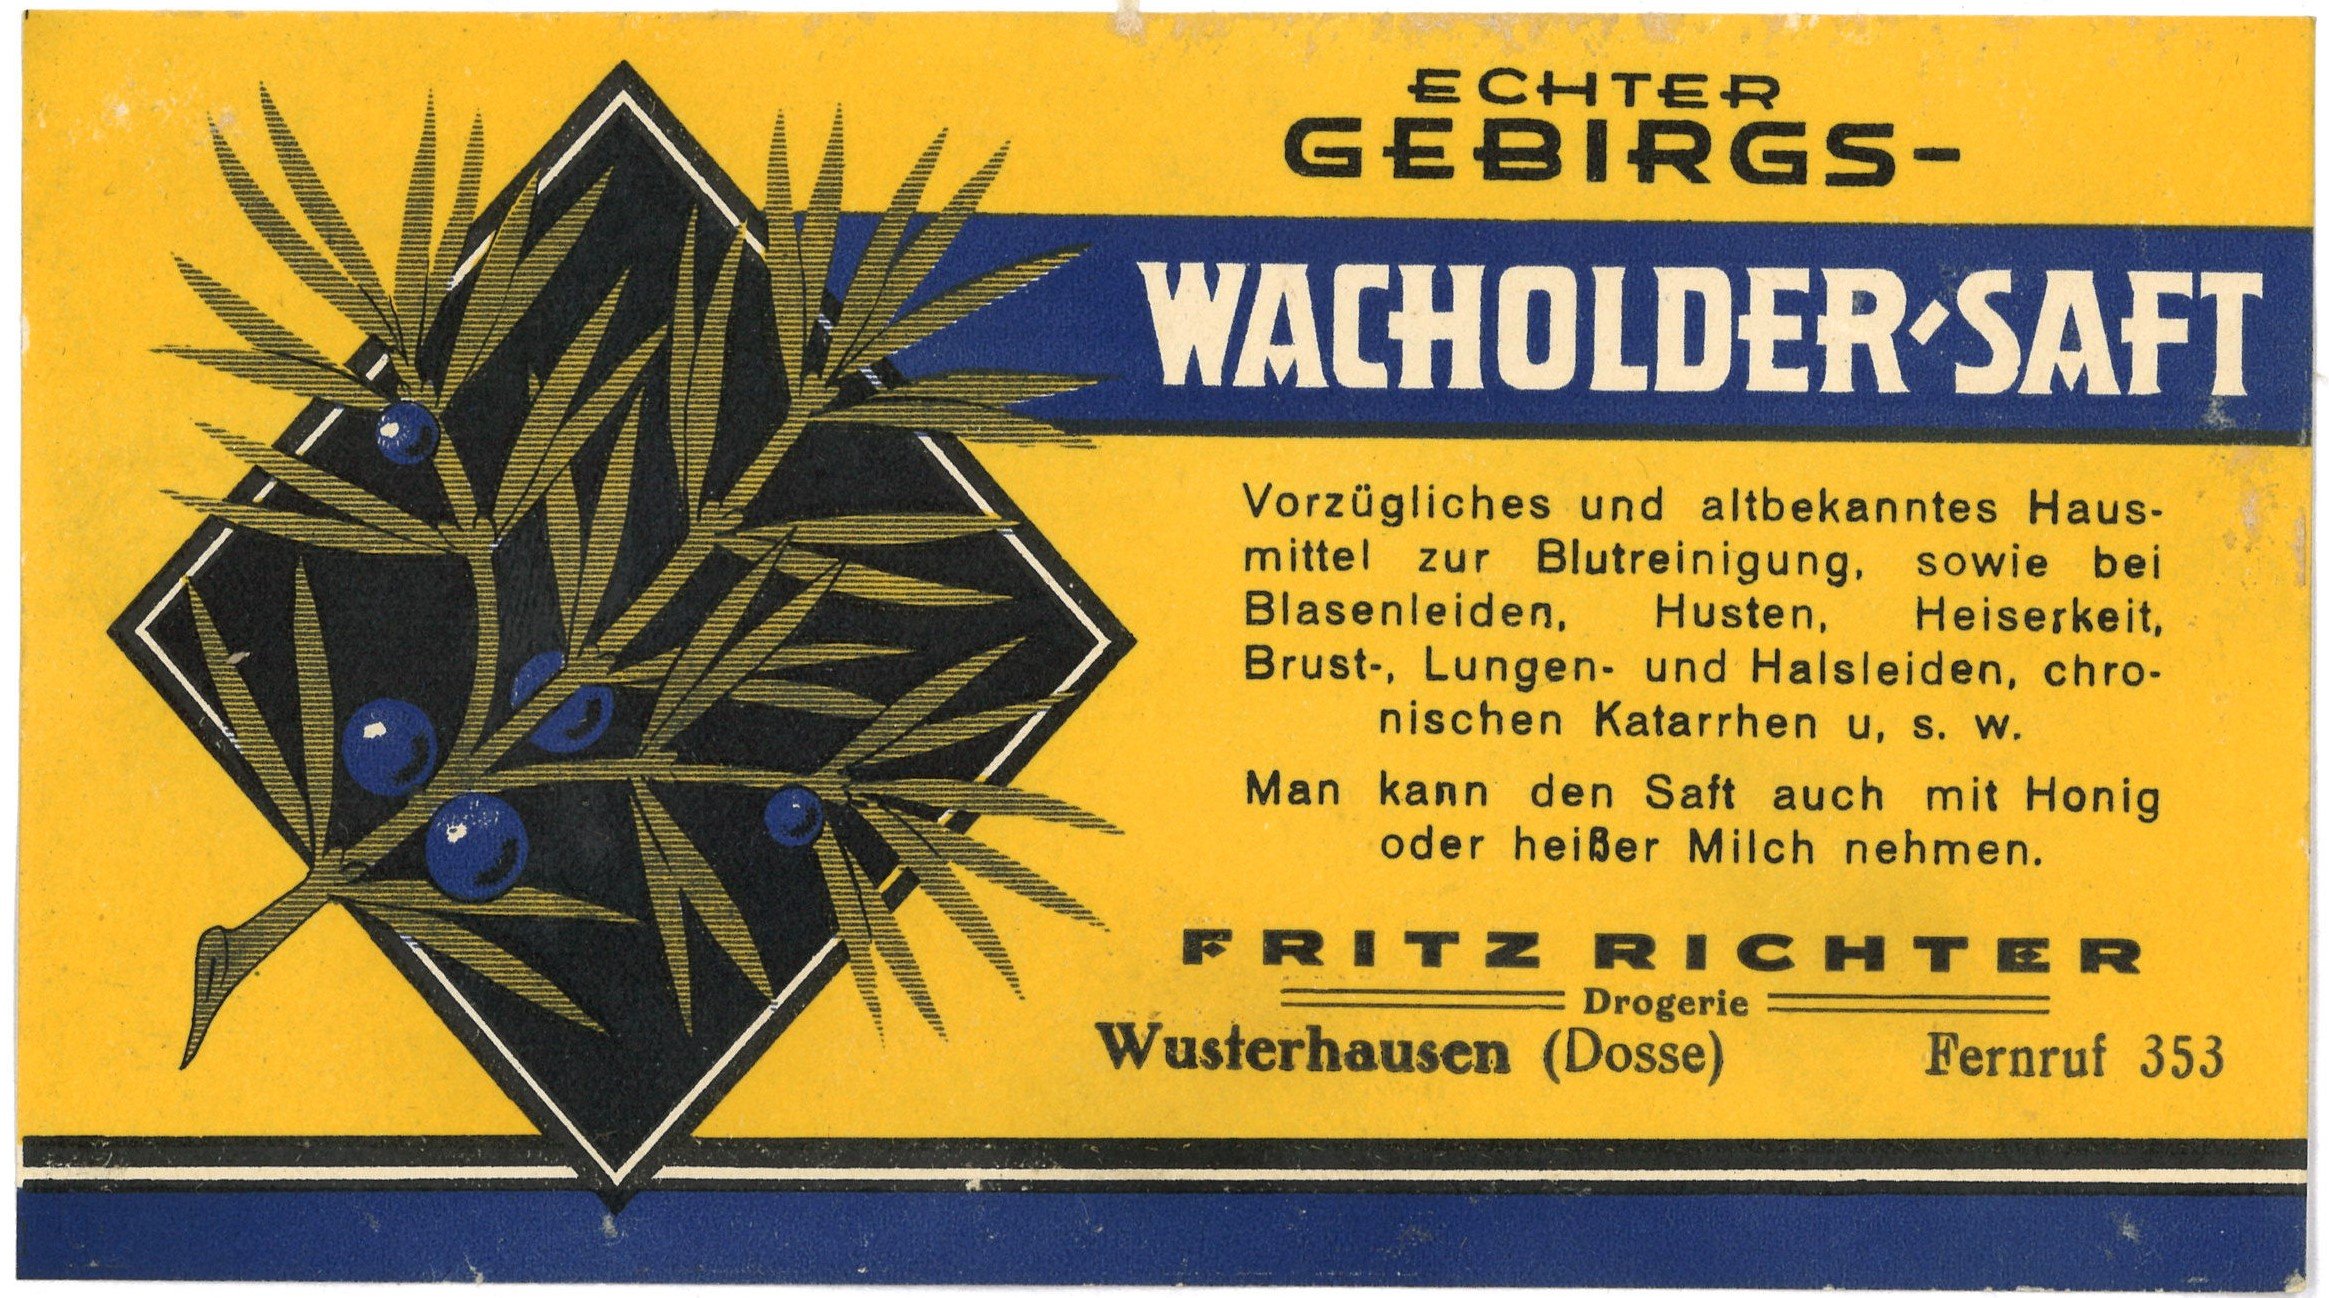 Wusterhausen/Dosse, Drogerie Fritz Richter: Wacholder-Saft (Landesgeschichtliche Vereinigung für die Mark Brandenburg e.V., Archiv CC BY)